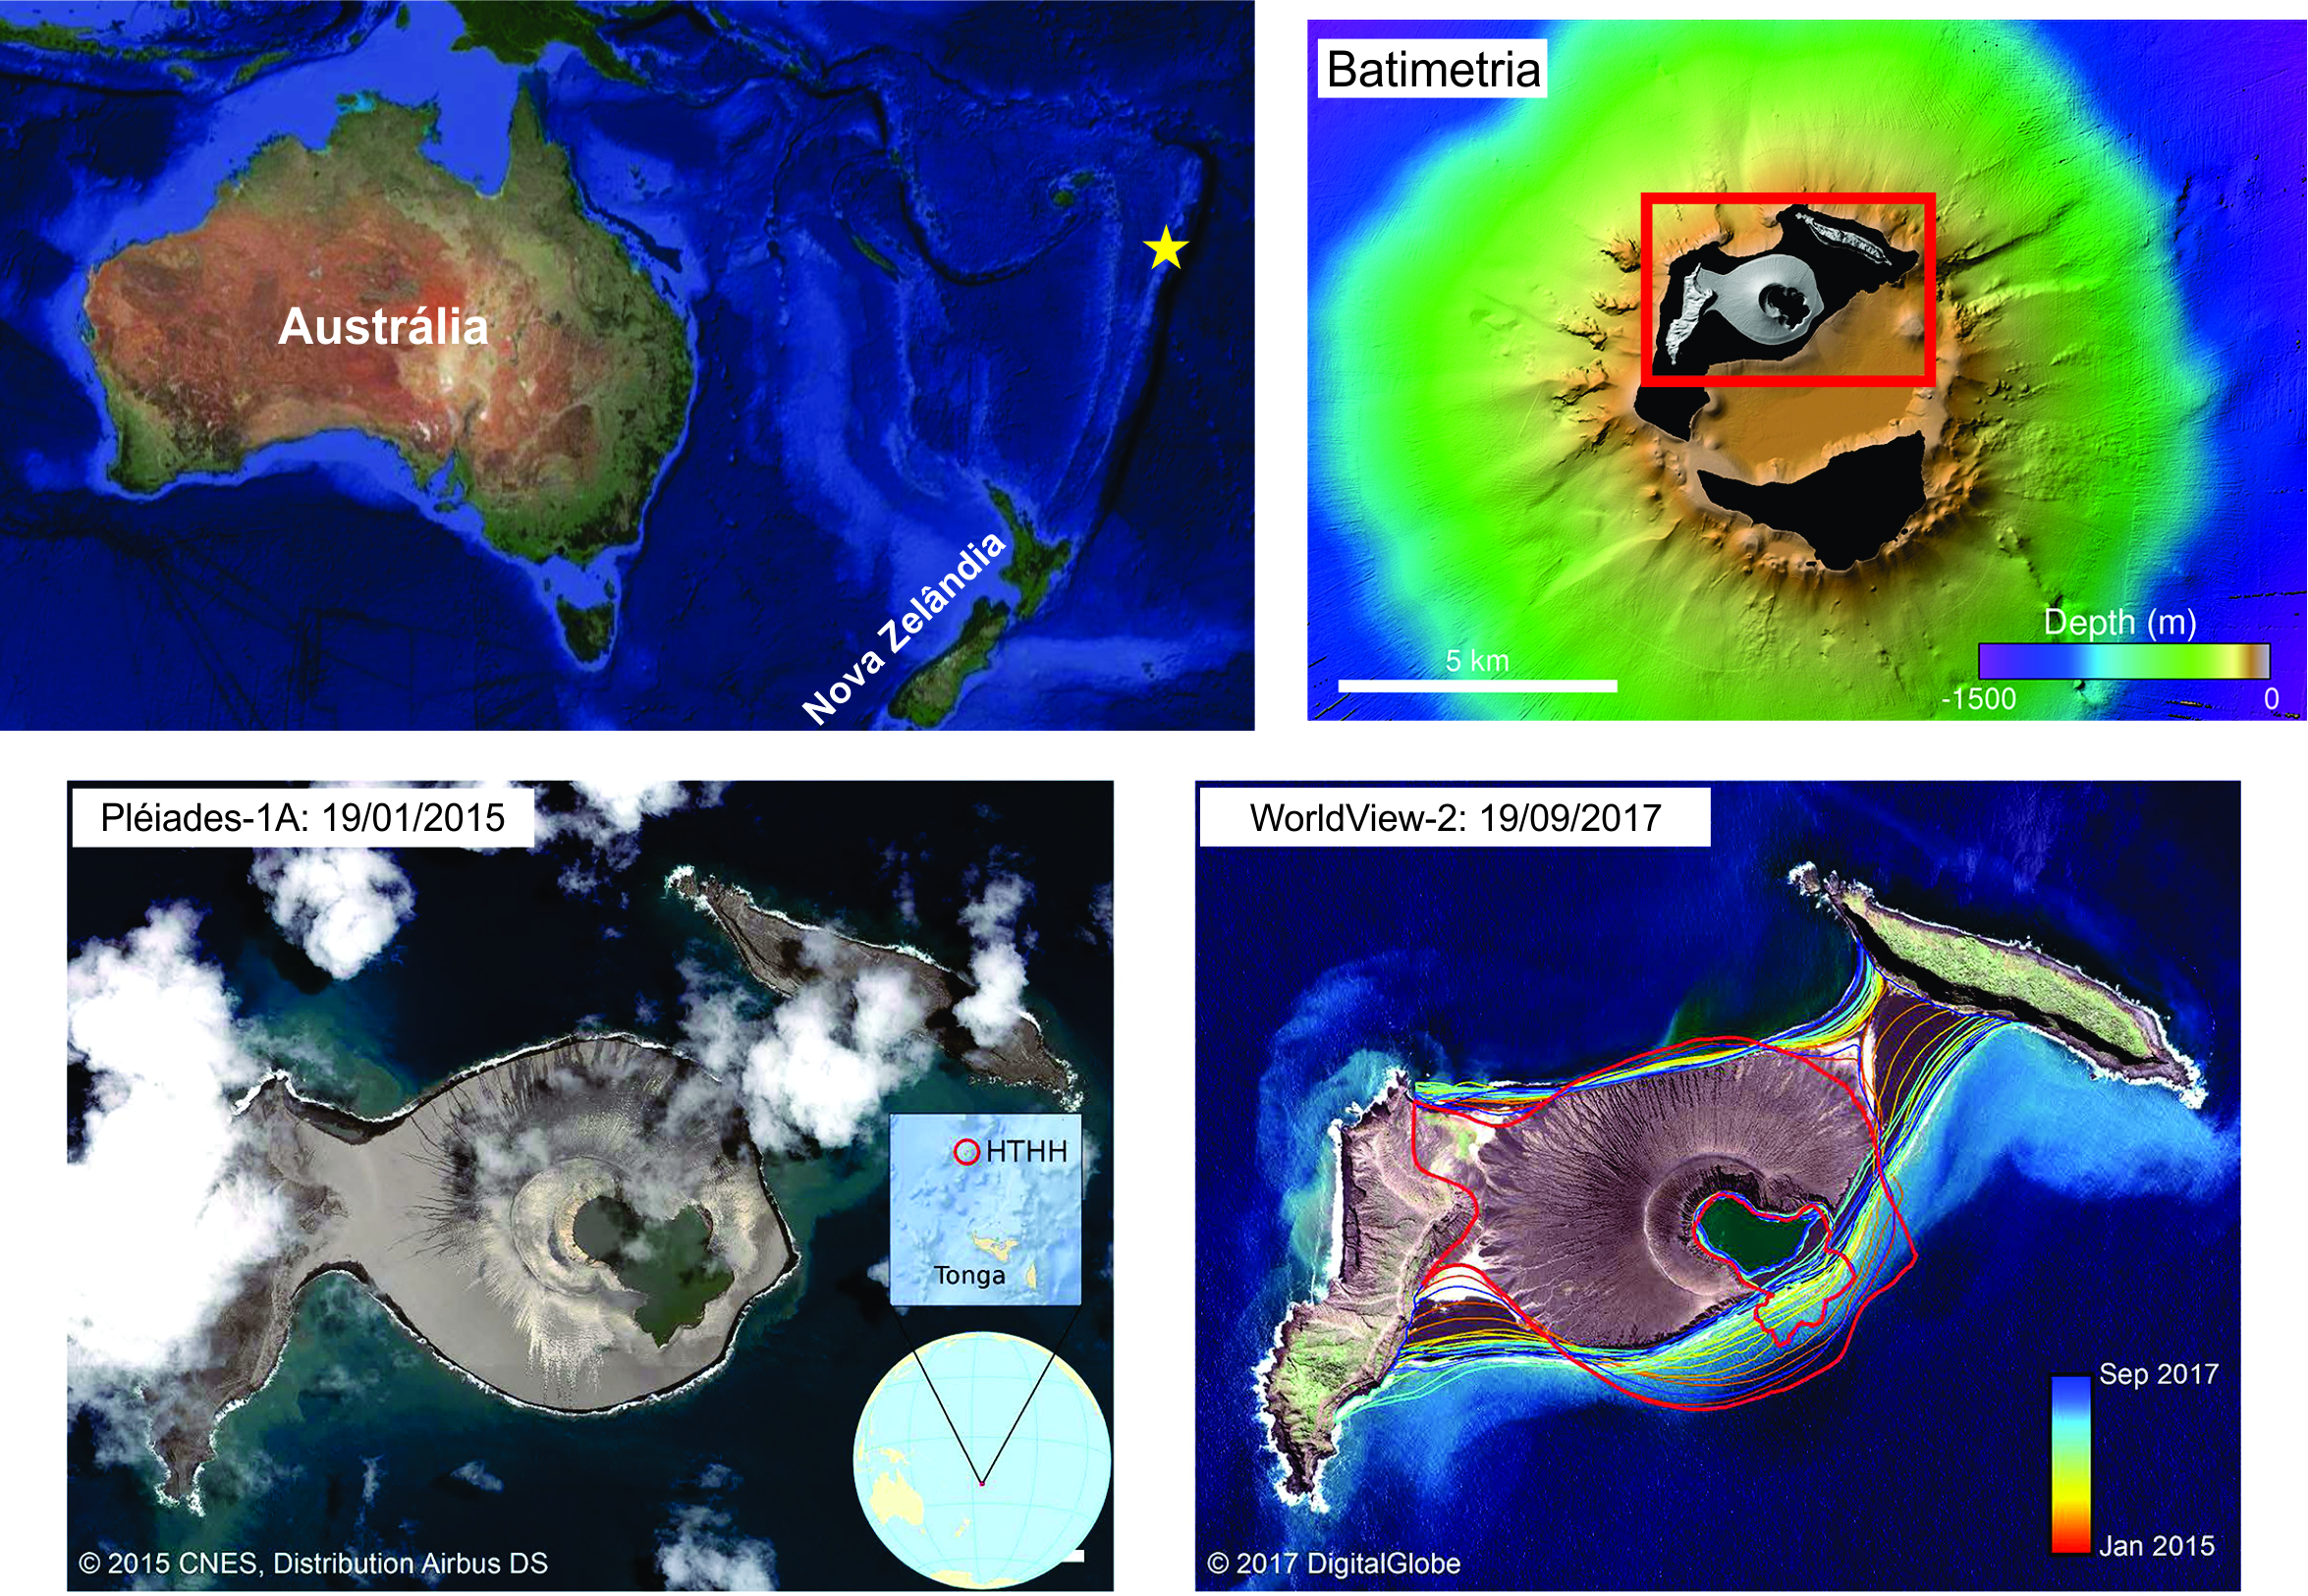 Localização do sistema vulcânico Hunga Tonga-Hunga Ha’apai (estrela amarela na imagem superior à esquerda). A imagem superior à direita apresenta a batimetria do entorno das ilhas Hunga Tonga e Hunga Ha'apai, medida a partir do navio R/V Falkor em abril de 2016, evidenciando o relevo no vulcão submarino; o volume total estimado do edifício vulcânico acima do piso da caldeira (a -155 m) é de aproximadamente 0,50 km³, dos quais cerca de 11% estão acima do nível médio do mar. O diâmetro basal do edifício é de aproximadamente 1,5 km. As imagens inferiores incluem uma imagem obtida pelo Airbus Pléiades-1A (à esquerda) no final do evento eruptivo de 2015, que representa a expressão inicial do relevo (pré-erosão) da “nova” ilha Hunga Tonga-Hunga Ha'apai, e o estado da ilha quase 3 anos depois (à direita), em imagem DigitalGlobe WorldView-2 obtida em 19 de setembro de 2017. A evolução costeira é evidenciada pelos contornos coloridos na imagem inferior à esquerda, com cores que variam do vermelho (janeiro de 2015) a azul (setembro de 2017).